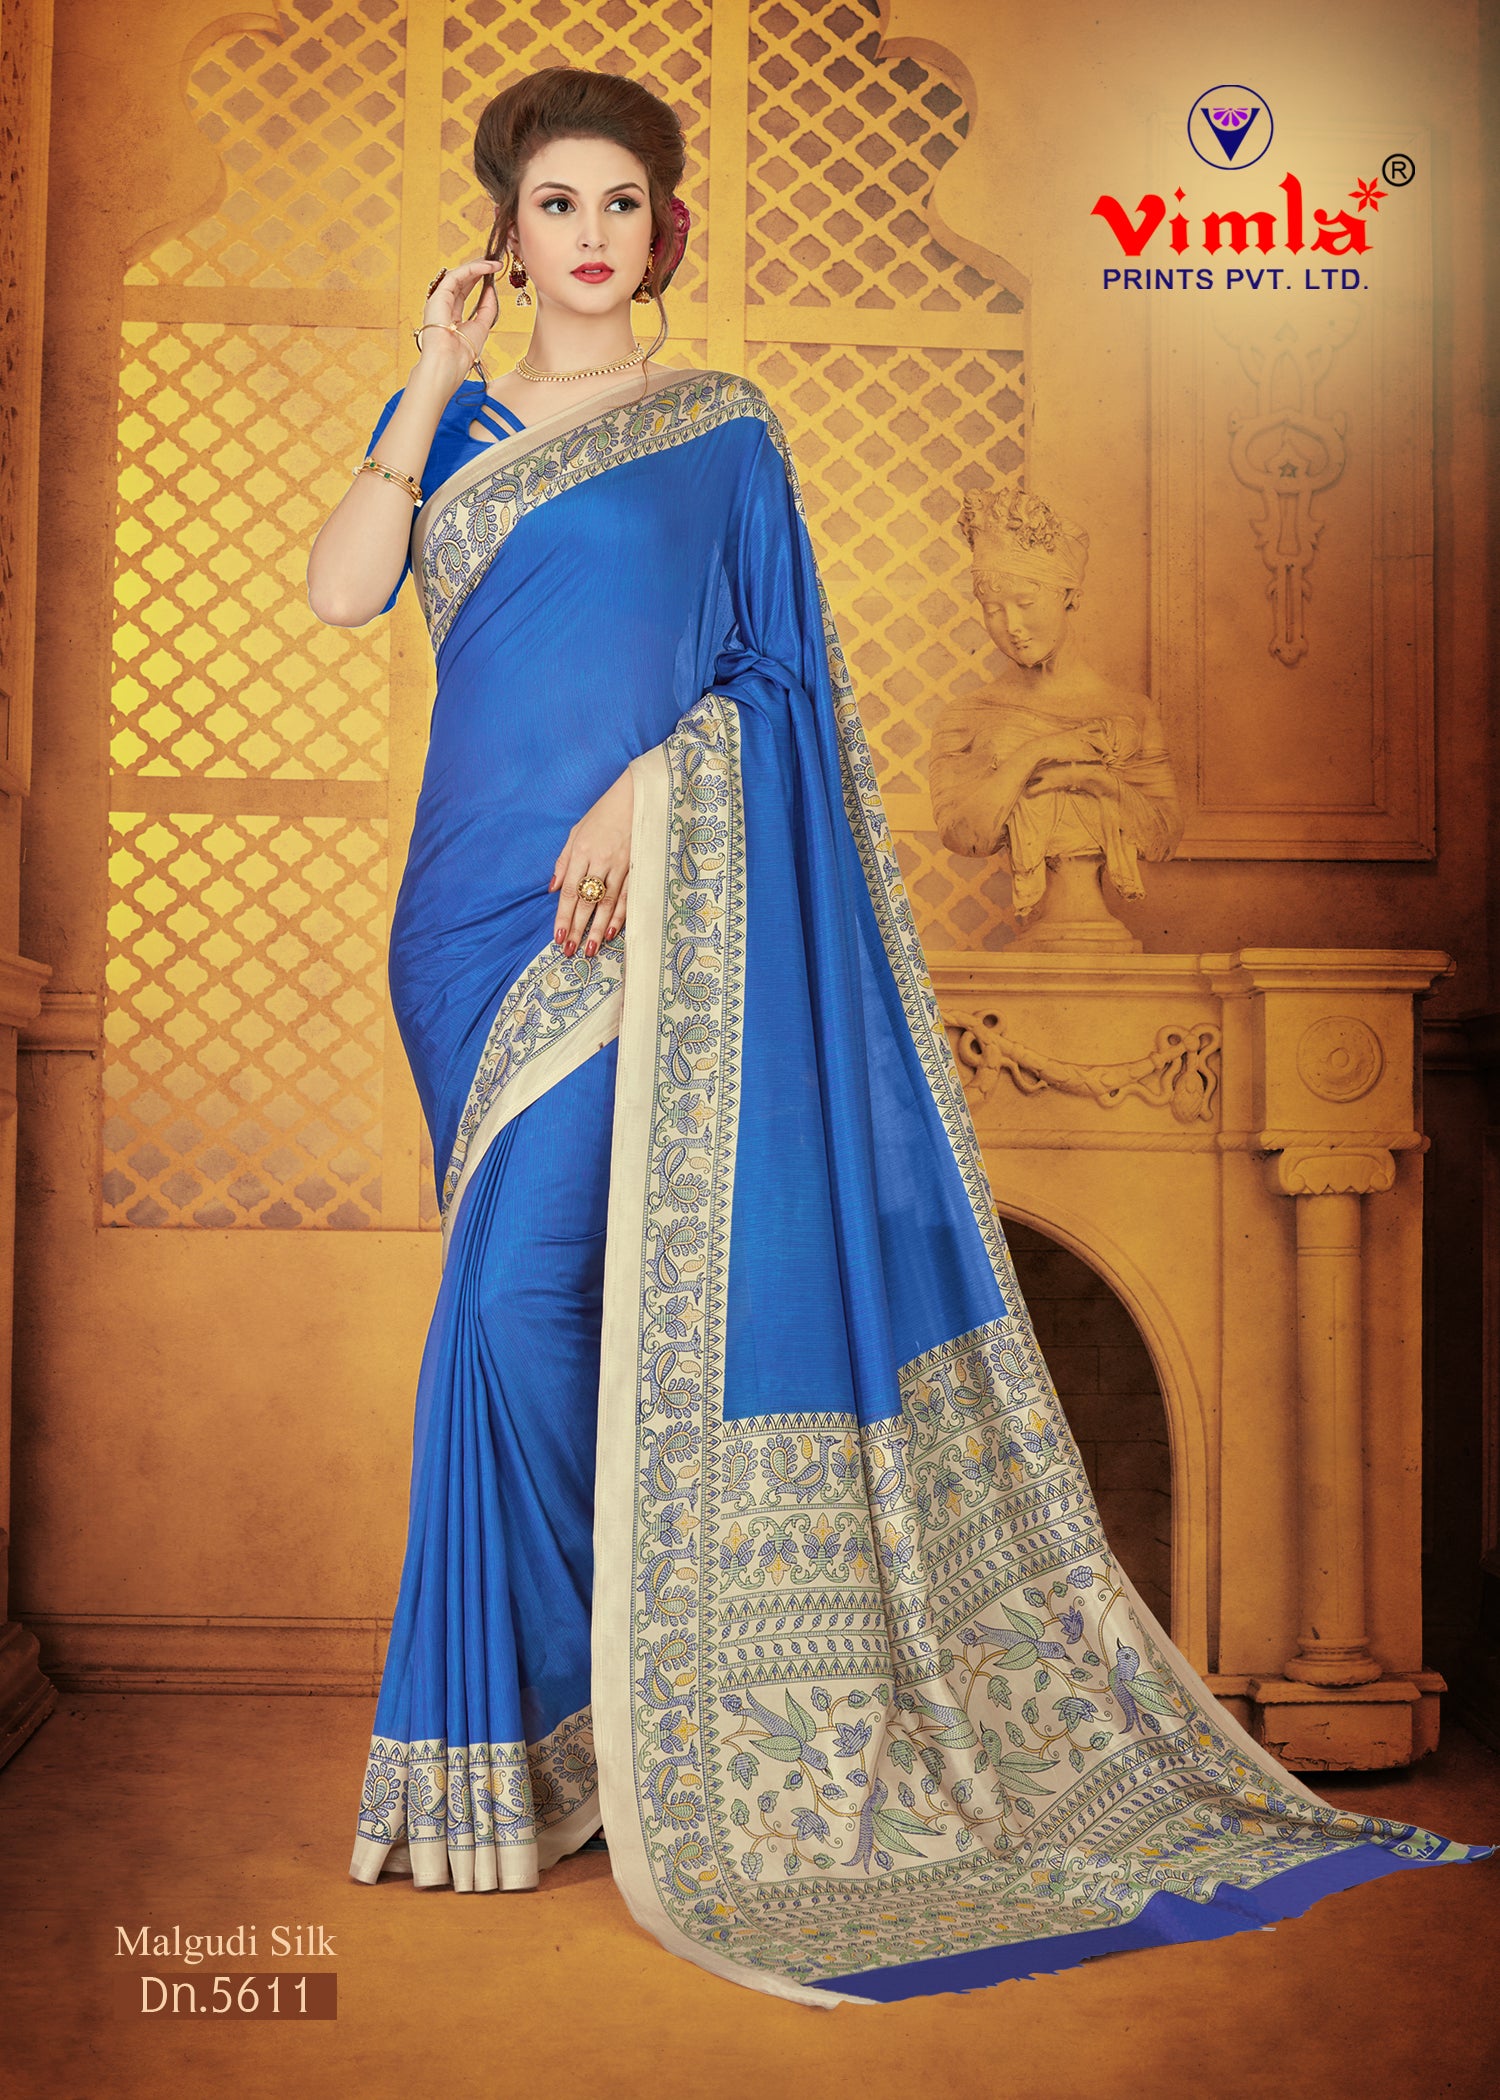 Vimla Women's Blue Malgudi Art Silk Uniform Saree with Blouse  (5611_Blue)